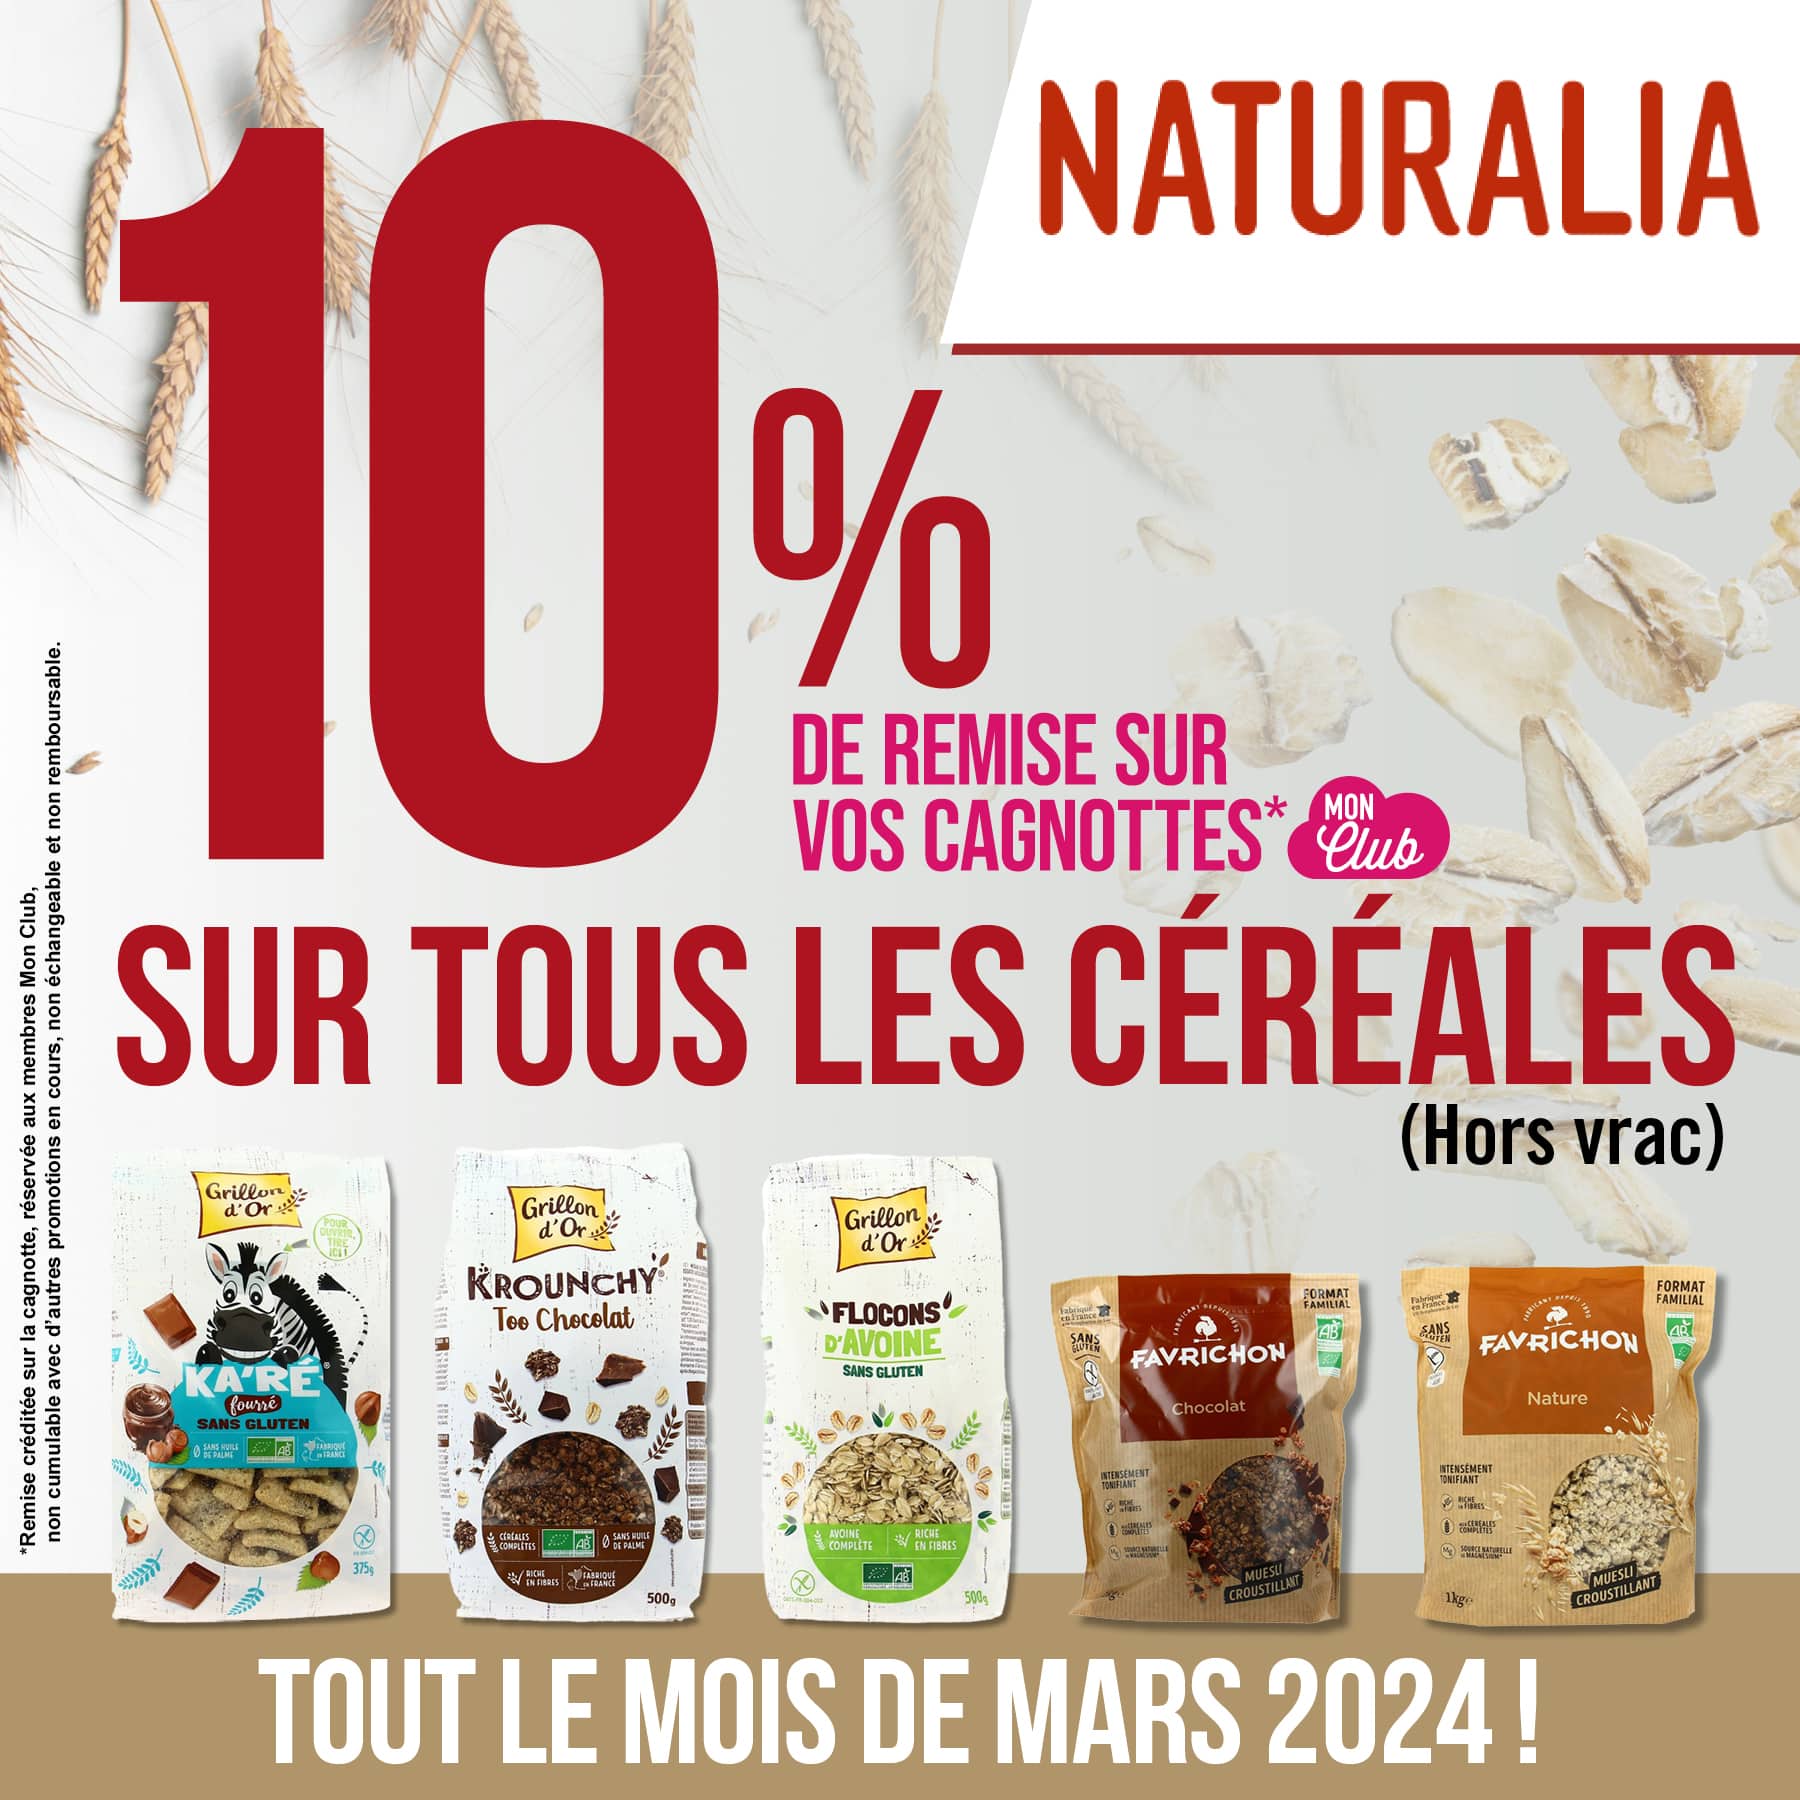 🌾 Offre Naturalia du mois de mars 2024 😋